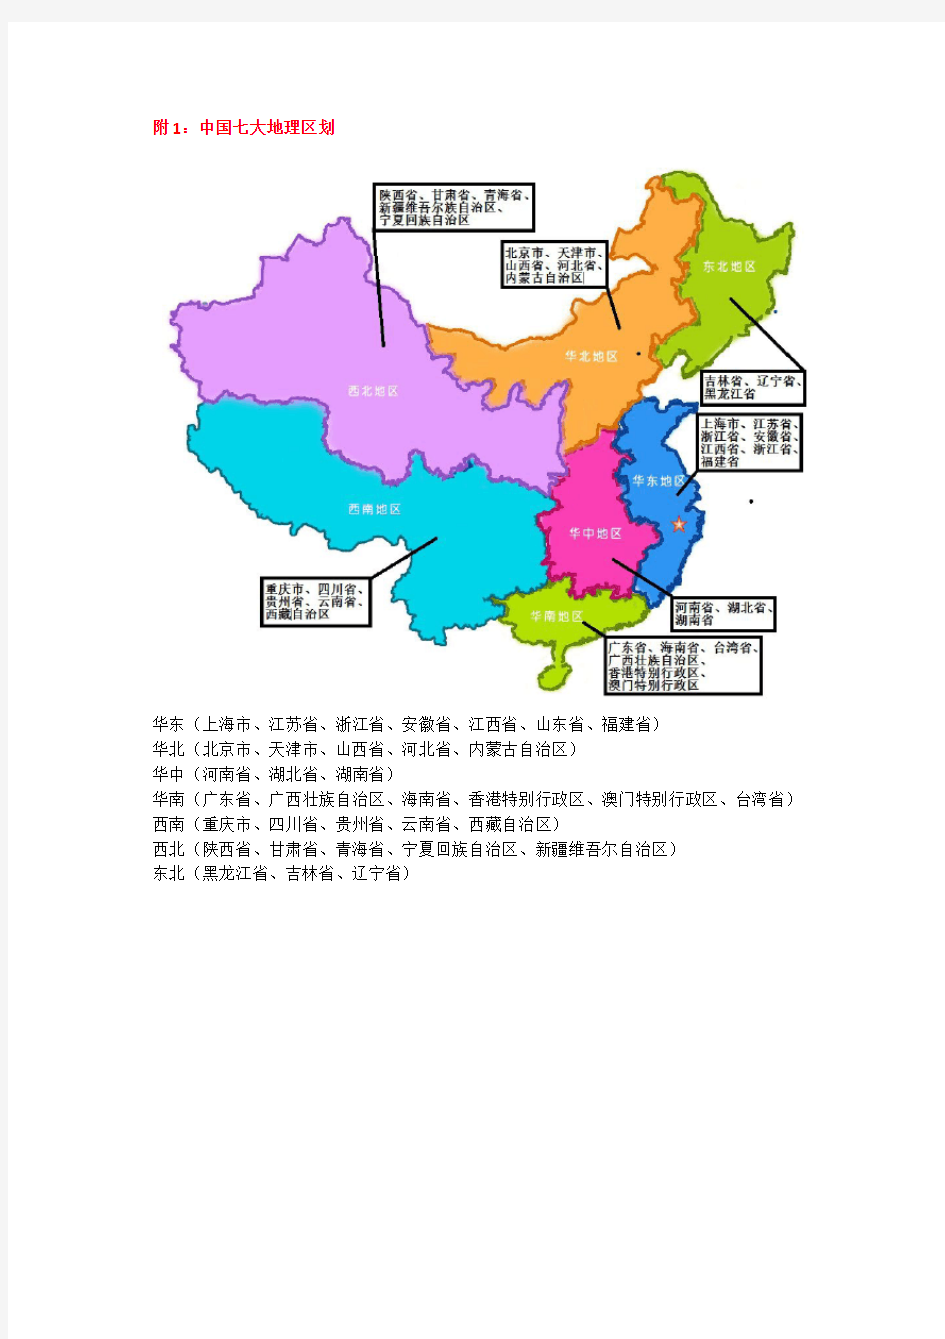 中国七大地理区划